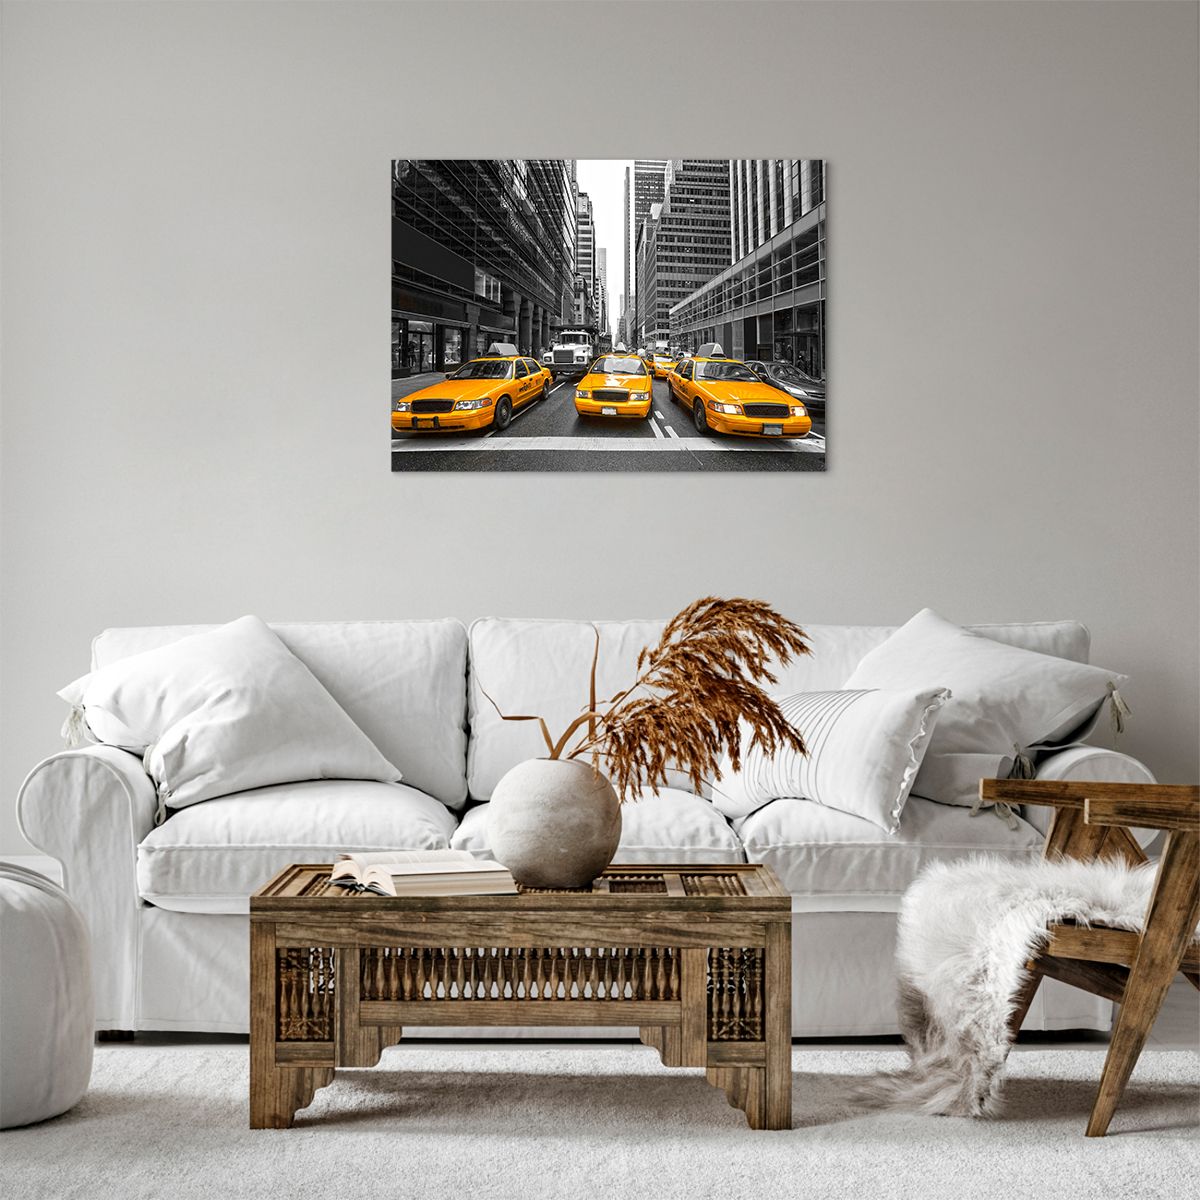 Bild auf Leinwand Stadt, Bild auf Leinwand New York, Bild auf Leinwand Die Architektur, Bild auf Leinwand Taxi, Bild auf Leinwand Manhattan